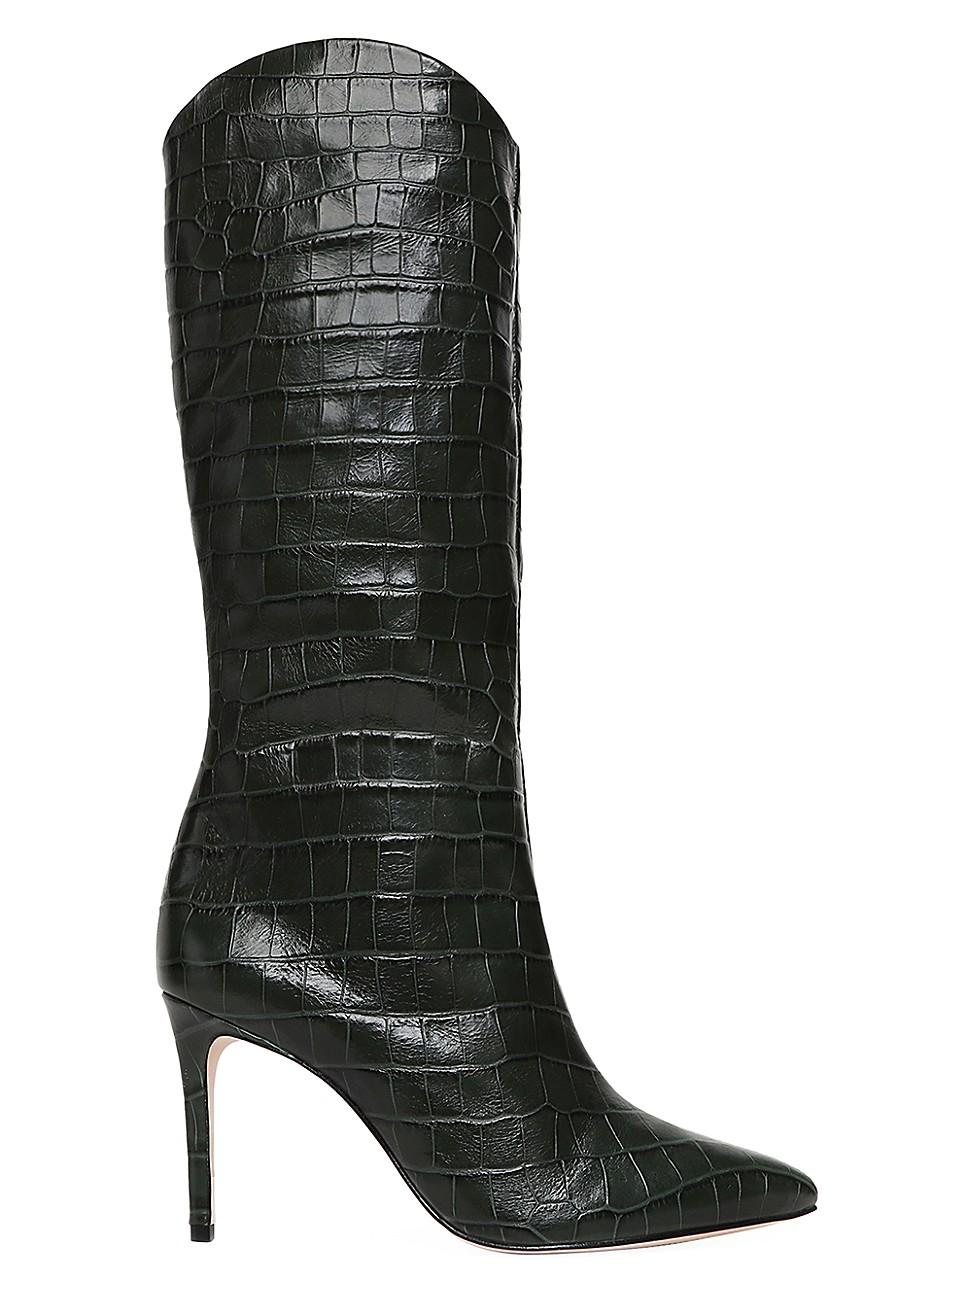 Schutz Maryana Knee-high Croc-embossed Leather Boots in Deep Green ...